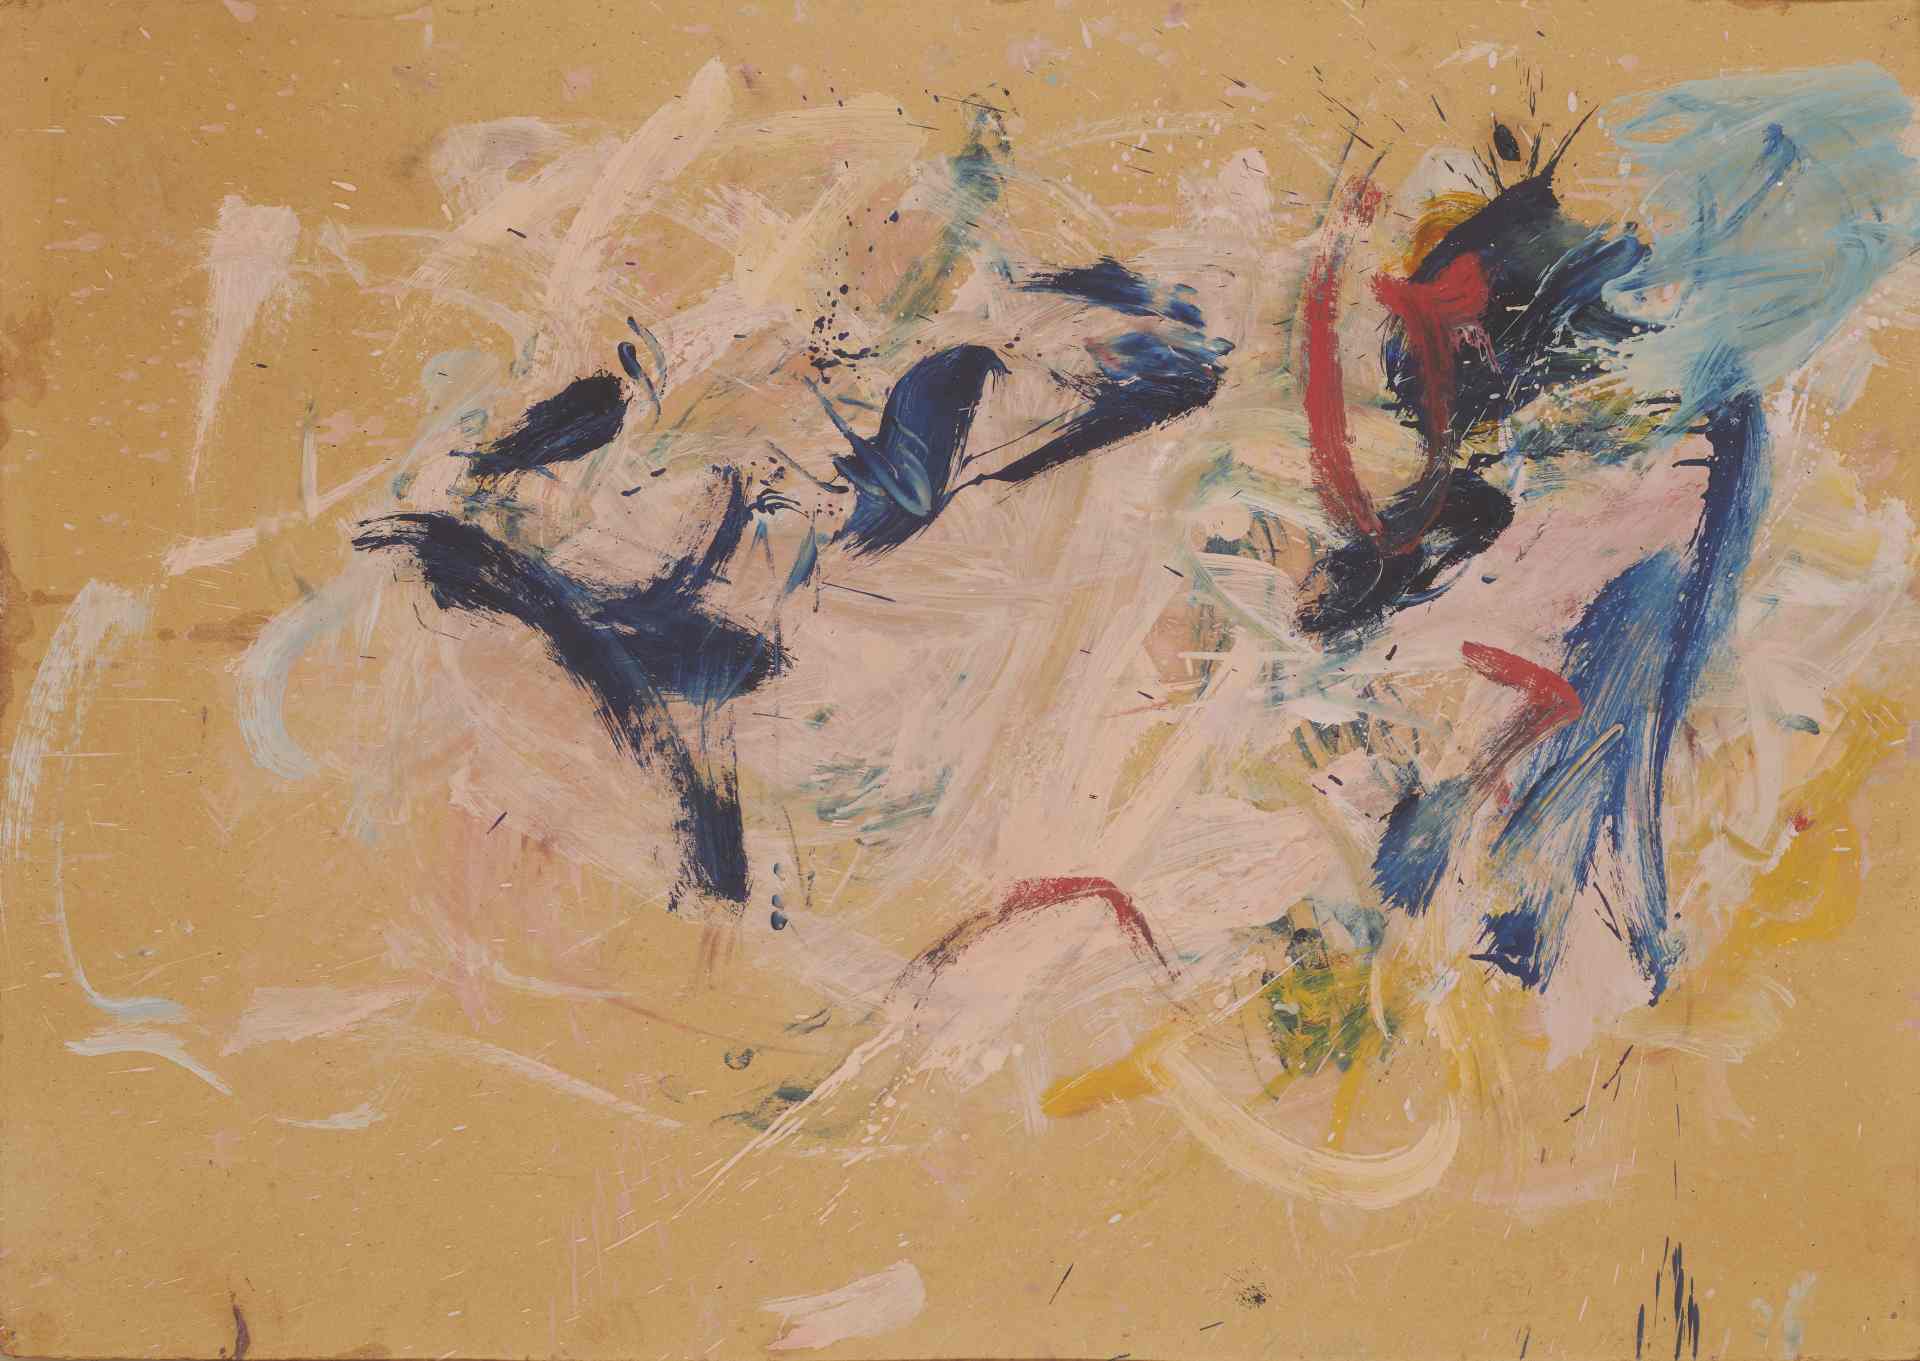 Martha Jungwirth (geb 1940), O.T., 1986, Öl auf Karton, 72 x 102 cm, signiert und datiert